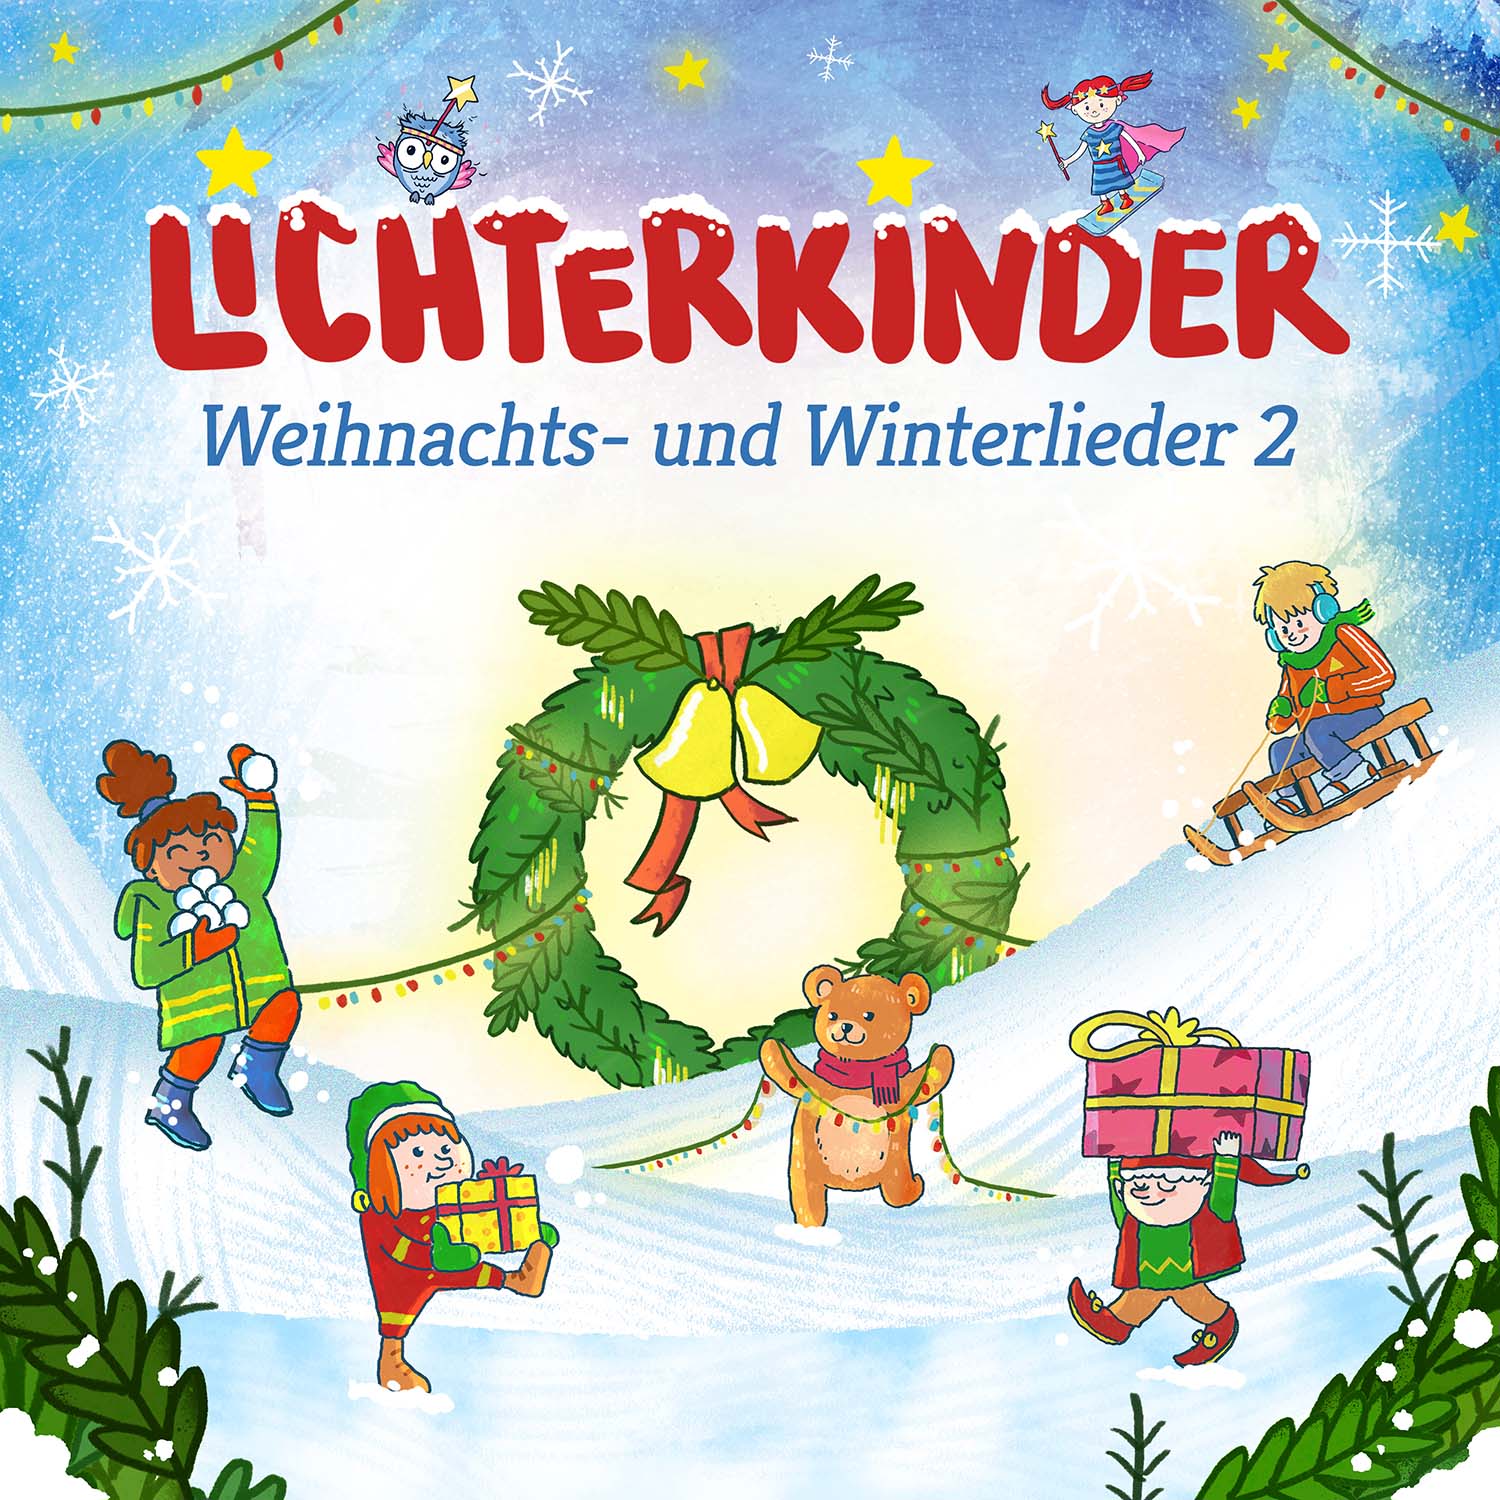 Weihnachts- und Winterlieder 2 CD 